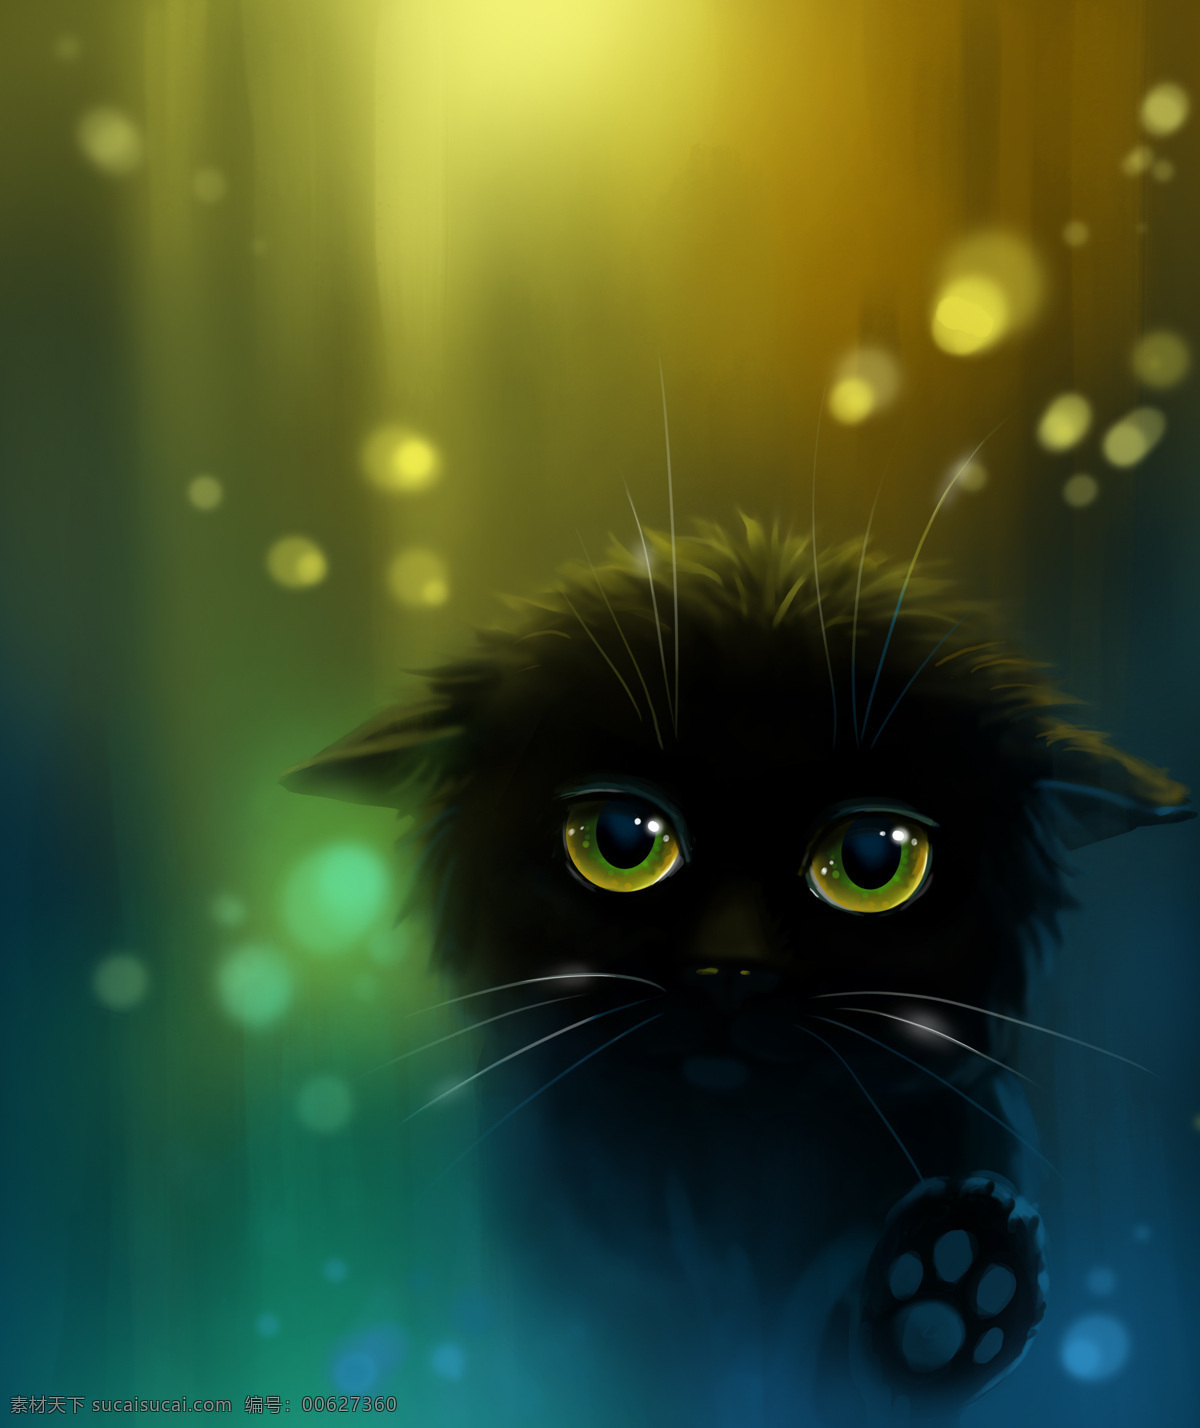 卡通黑猫插画 黑猫 卡通猫咪 小猫 卡通动物插画 通动物漫画 动物插图 梦幻背景 其他类别 生活百科 黑色